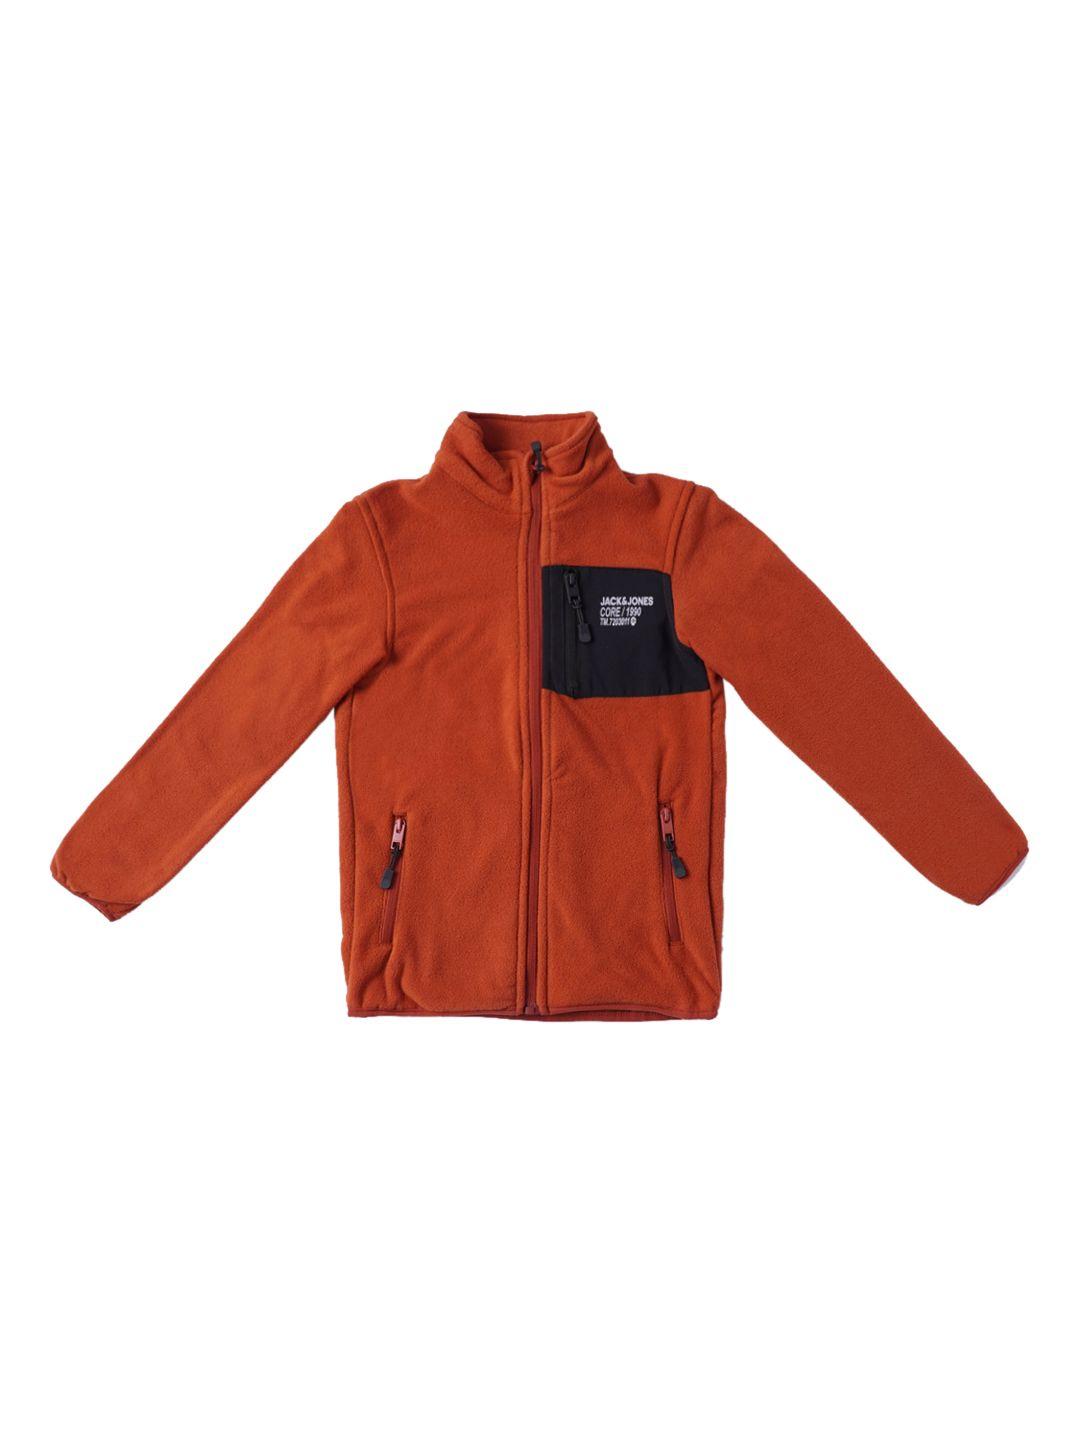 Jack & Jones Boys Orange Padded Jacket With Patchwork